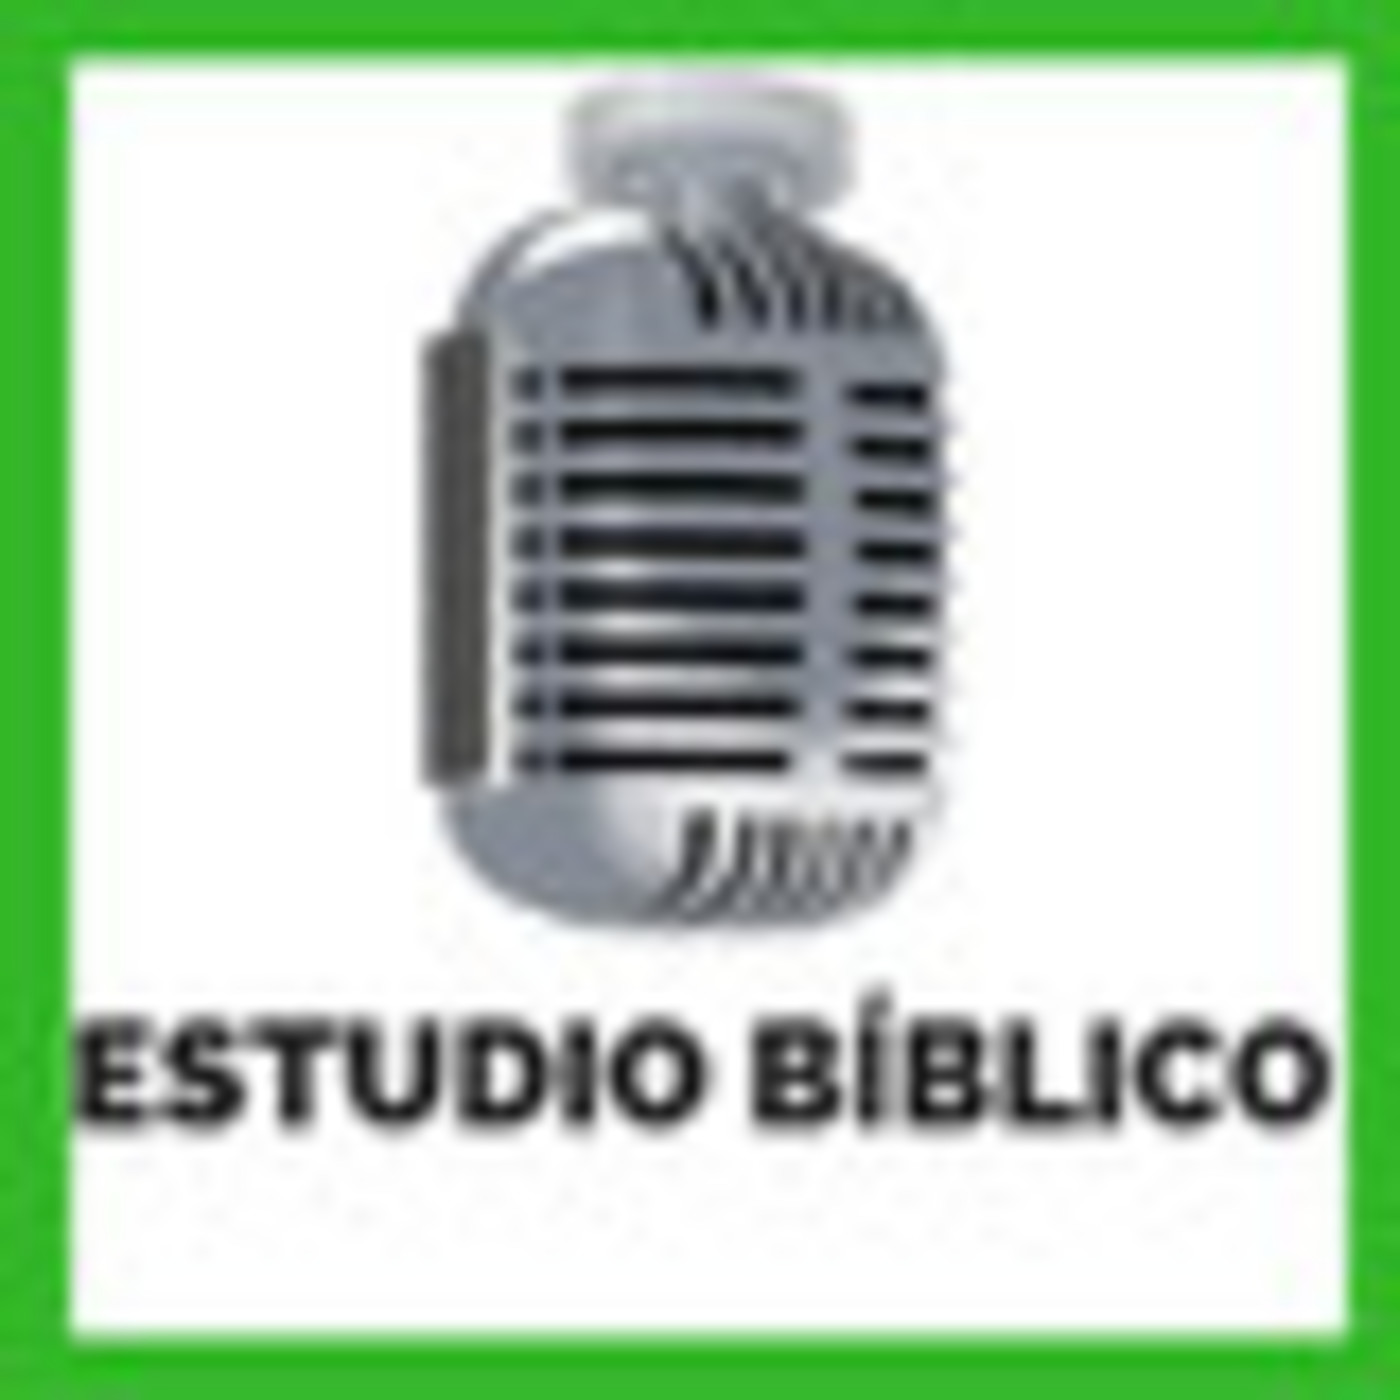 2019-08-20 | Estudio Bíblico | SERVIR A LOS NECESITADOS - EL BUEN SAMARITANO